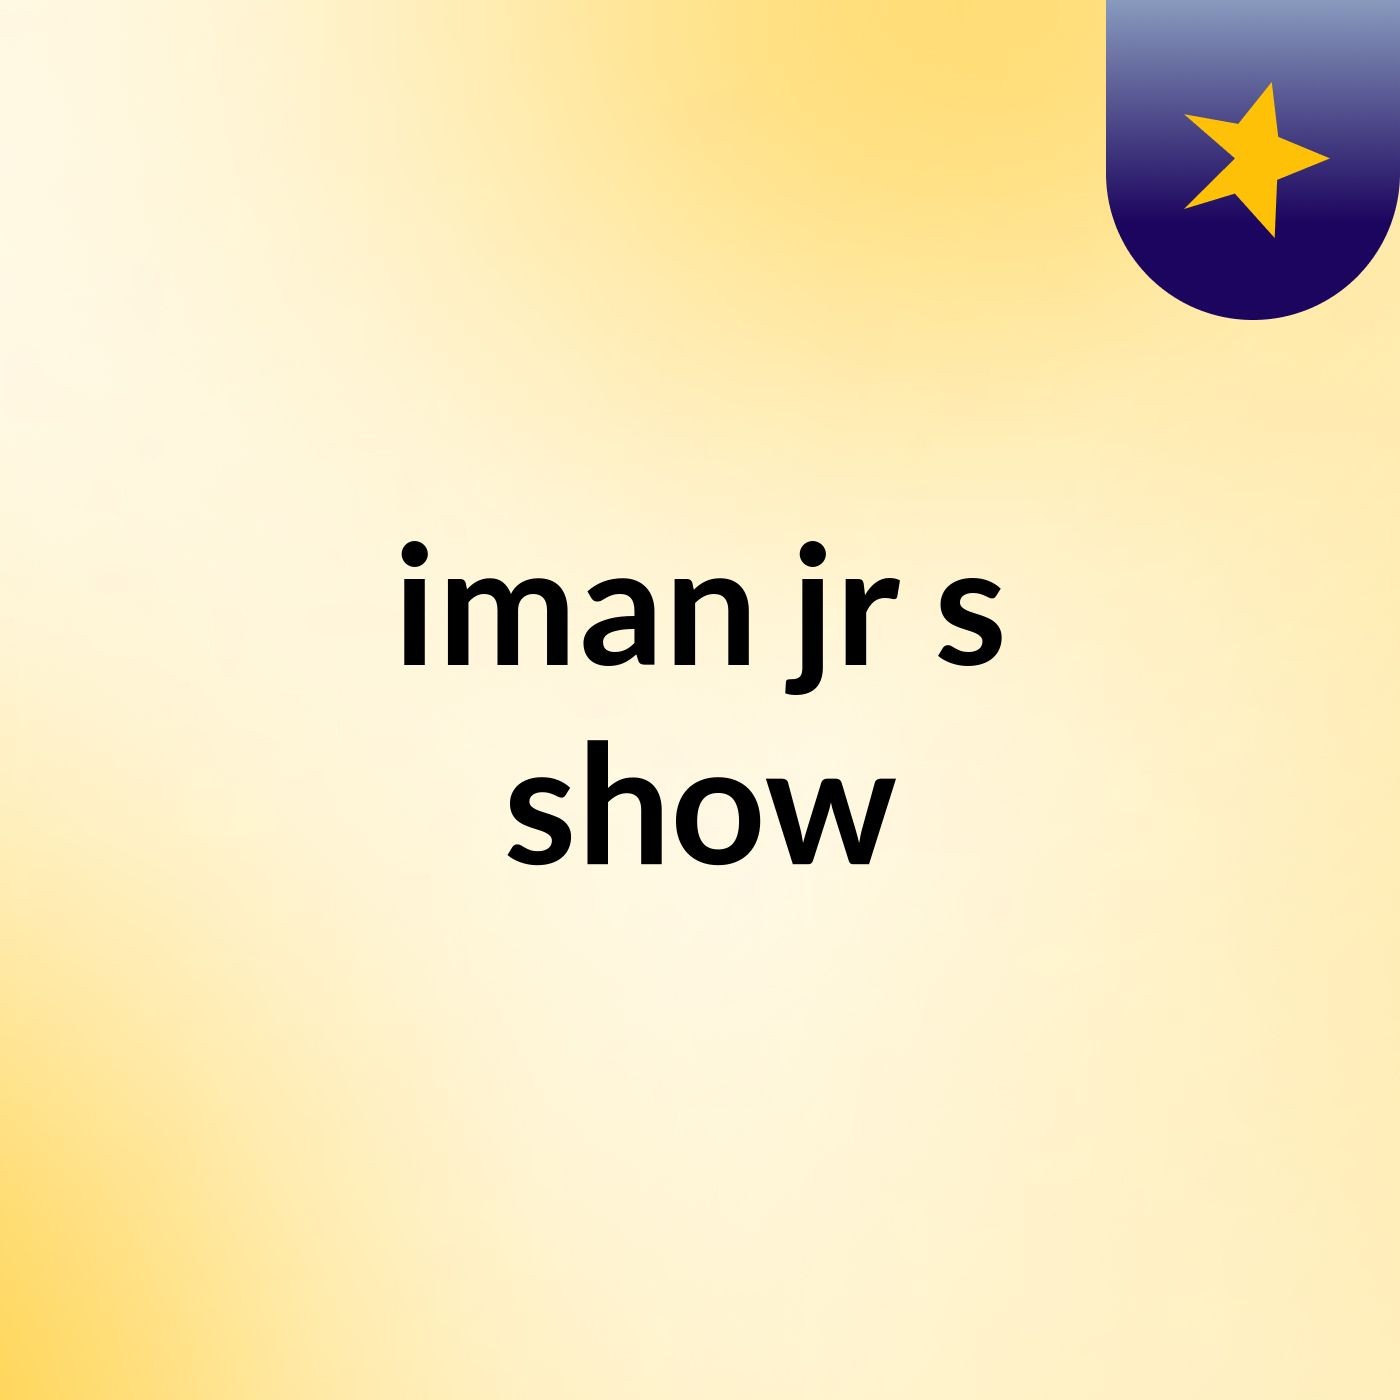 Episode 5 - iman jr's show